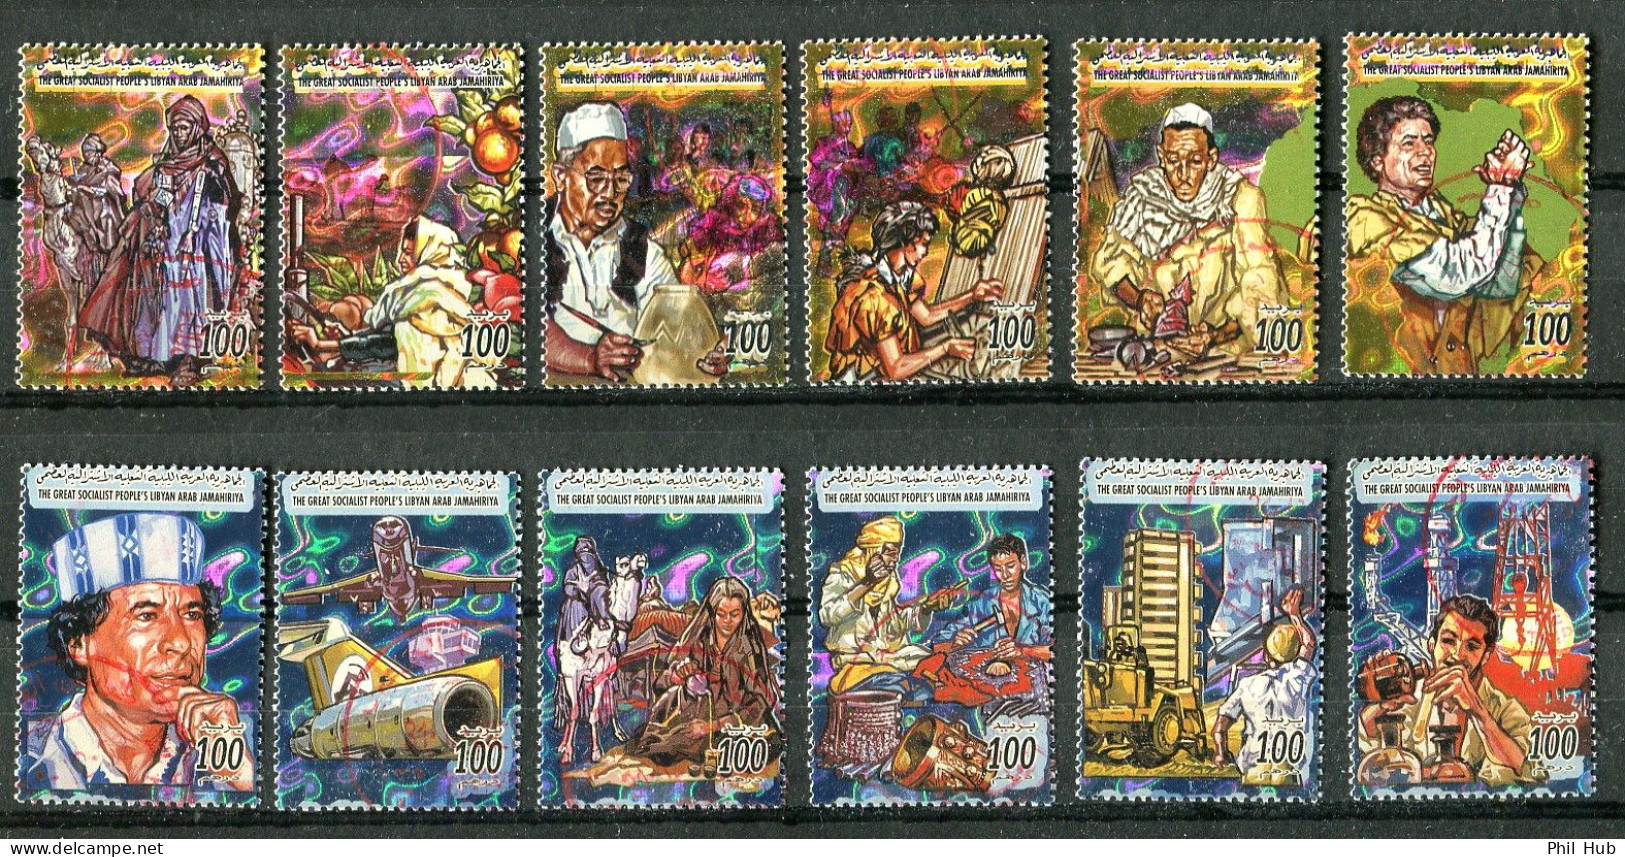 LIBYA 2001/2002 - 12 Hologram Stamps PMK (lot #3) - Holograms